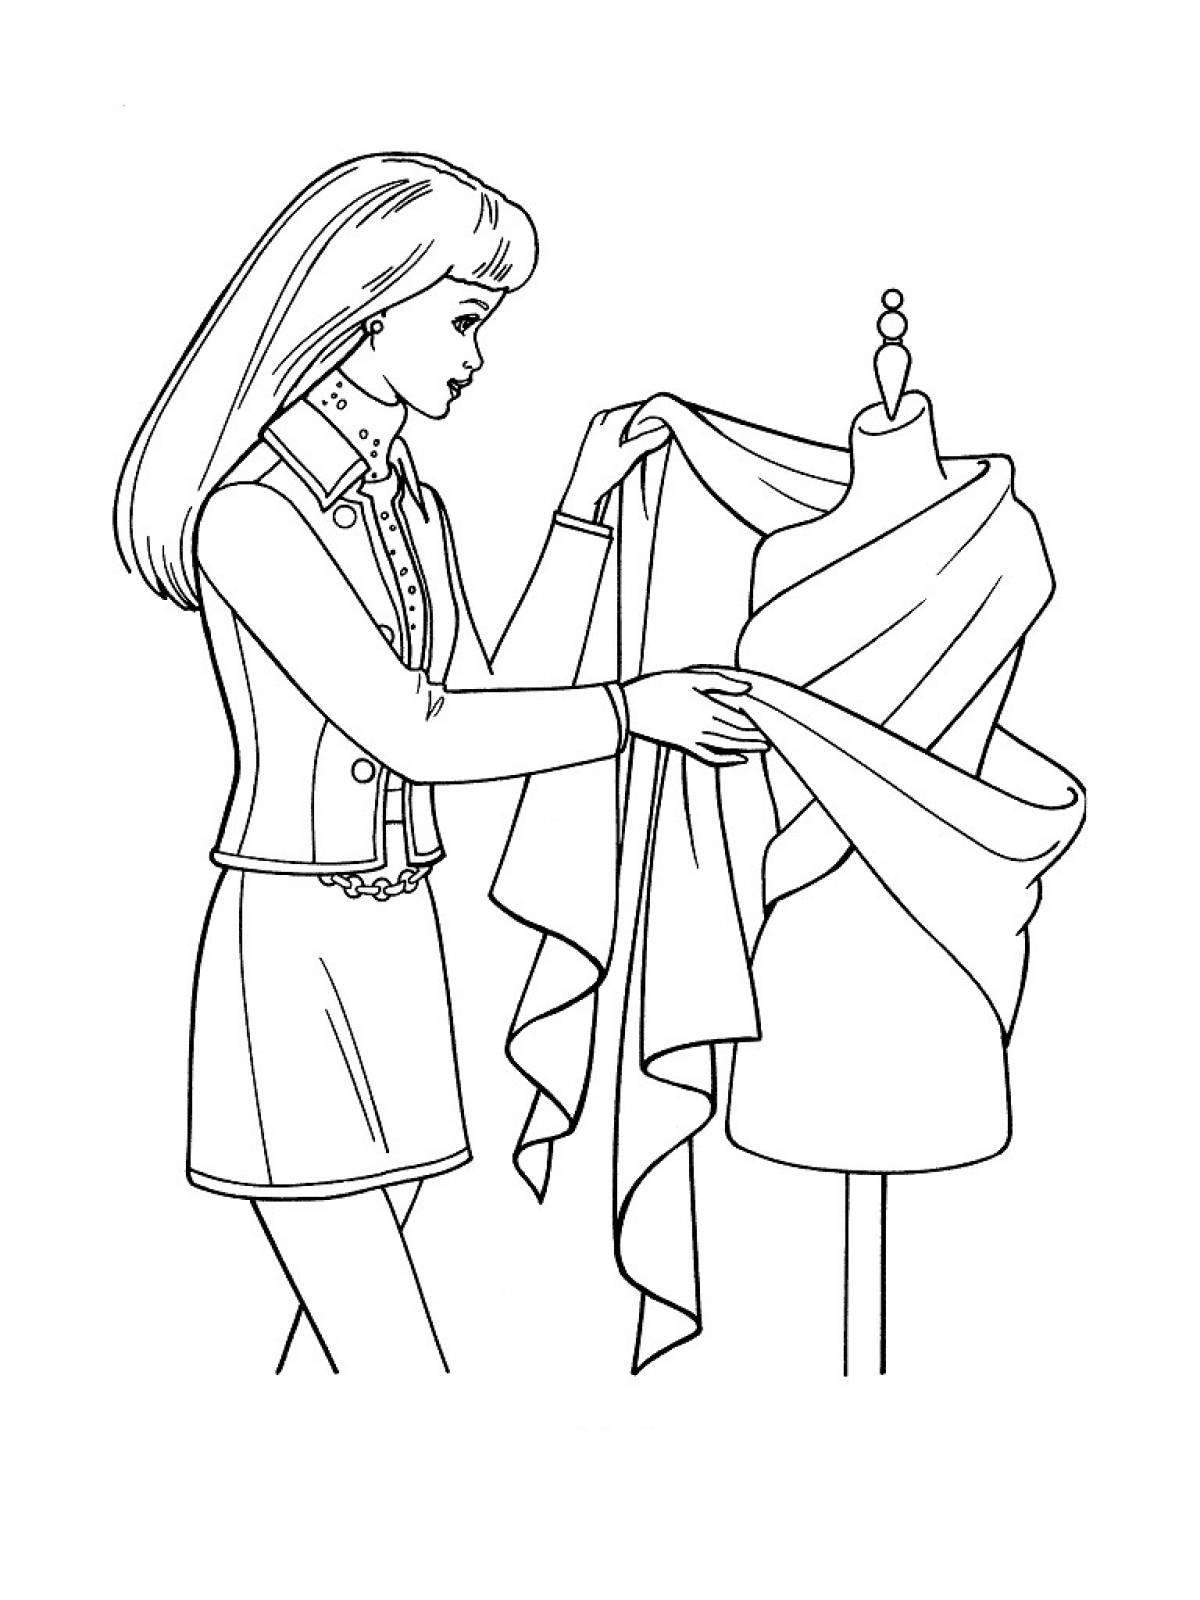 Иллюстрации на тему дизайнера одежды